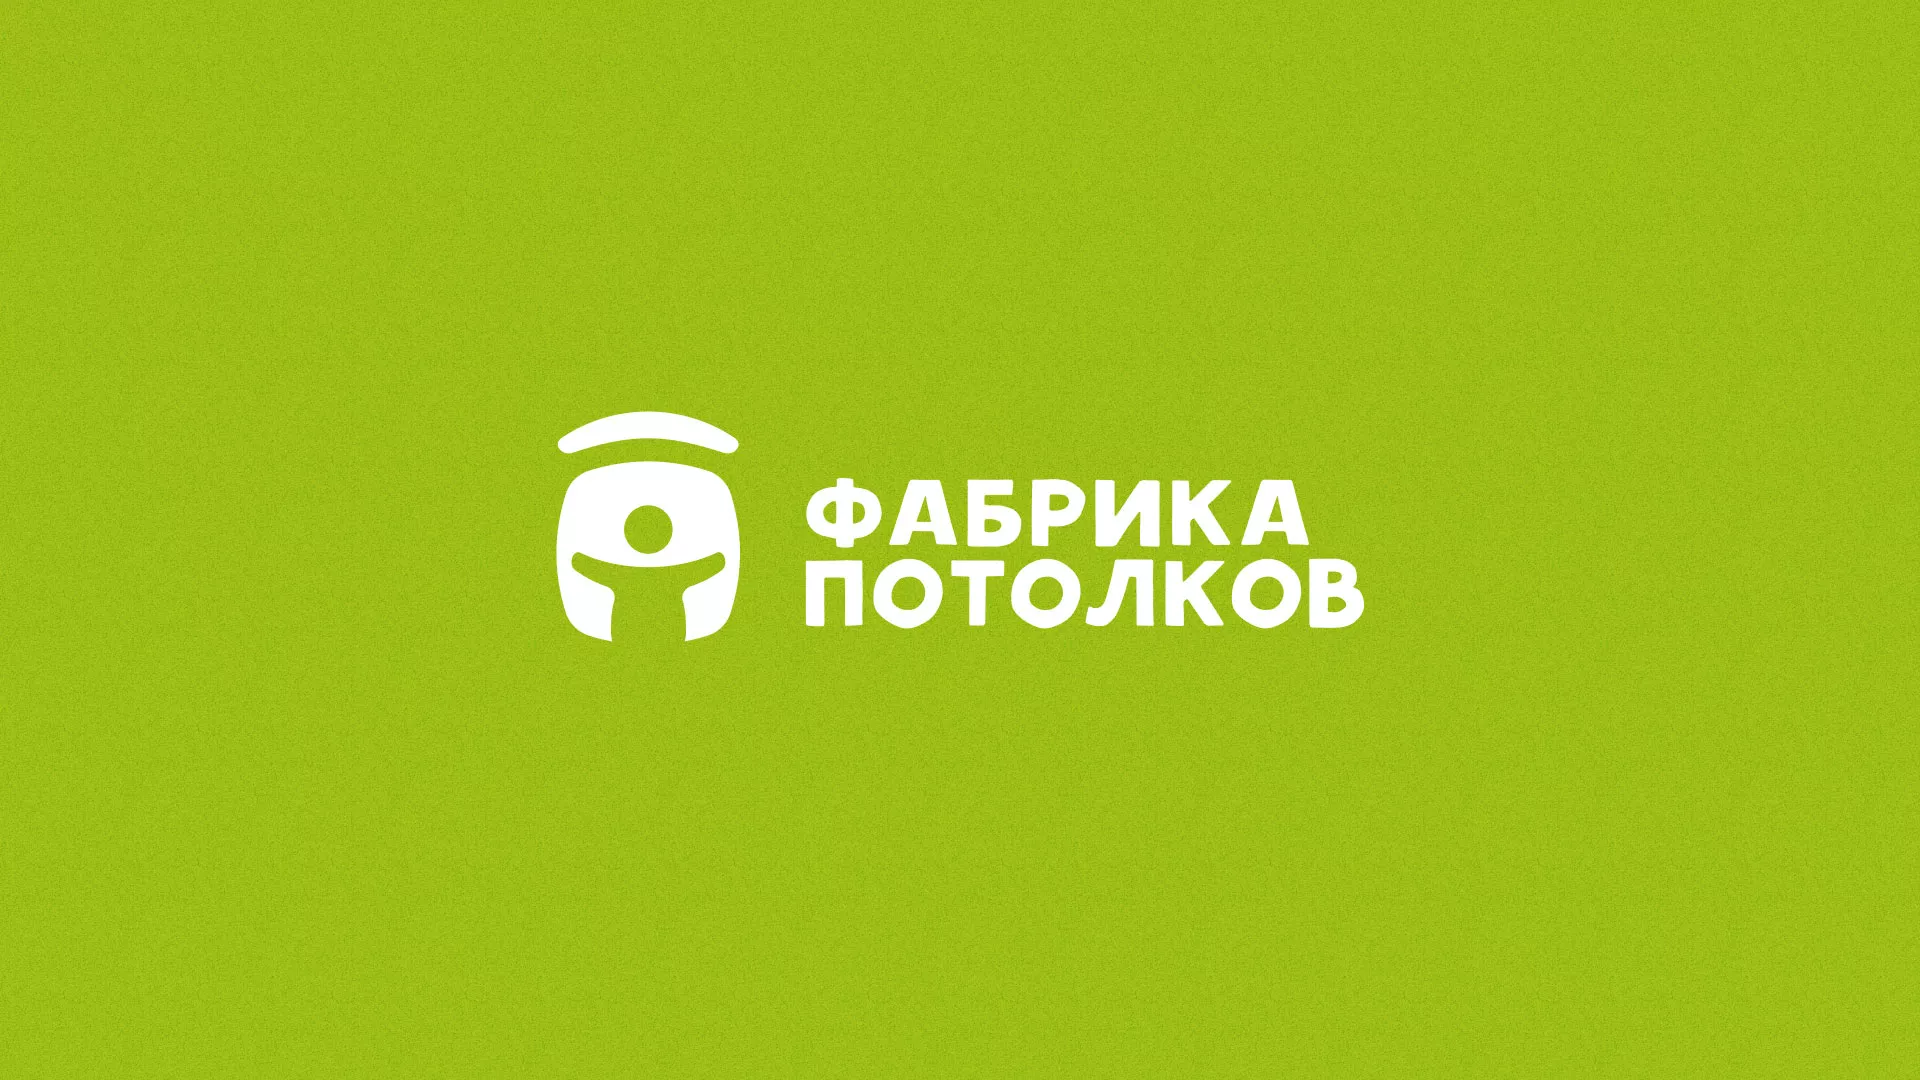 Разработка логотипа для производства натяжных потолков в Каменске-Уральском